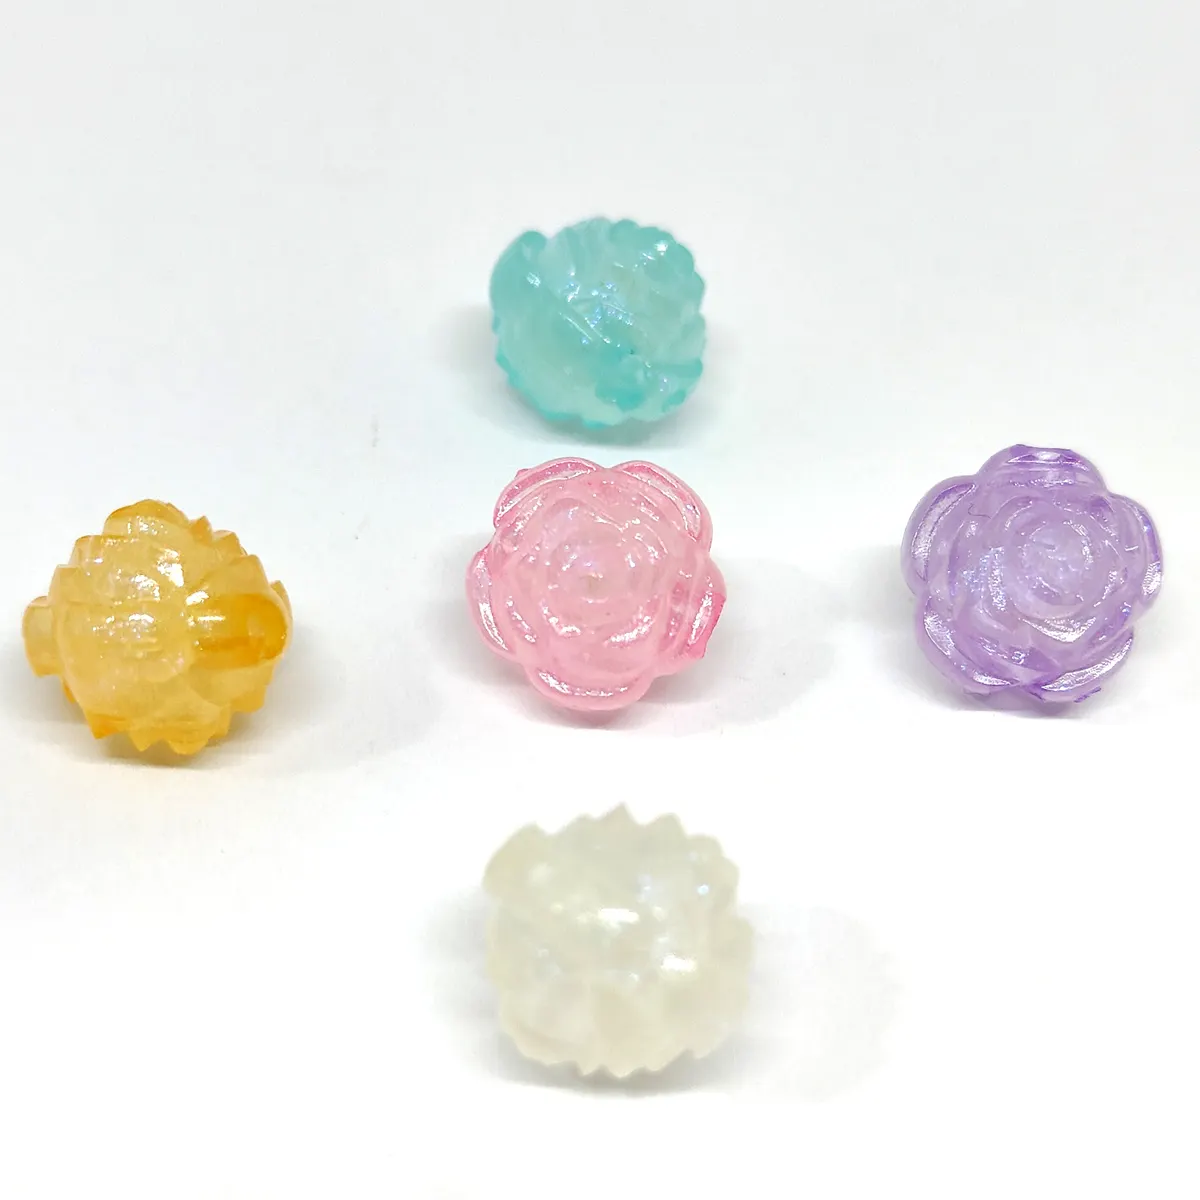 Durchsichtige Gelee Farbe leuchtendes Loch kleine Blume 12 mm Perlen gemischte Farben für Armband Halskette Tasche Kette Schmuckproduktion